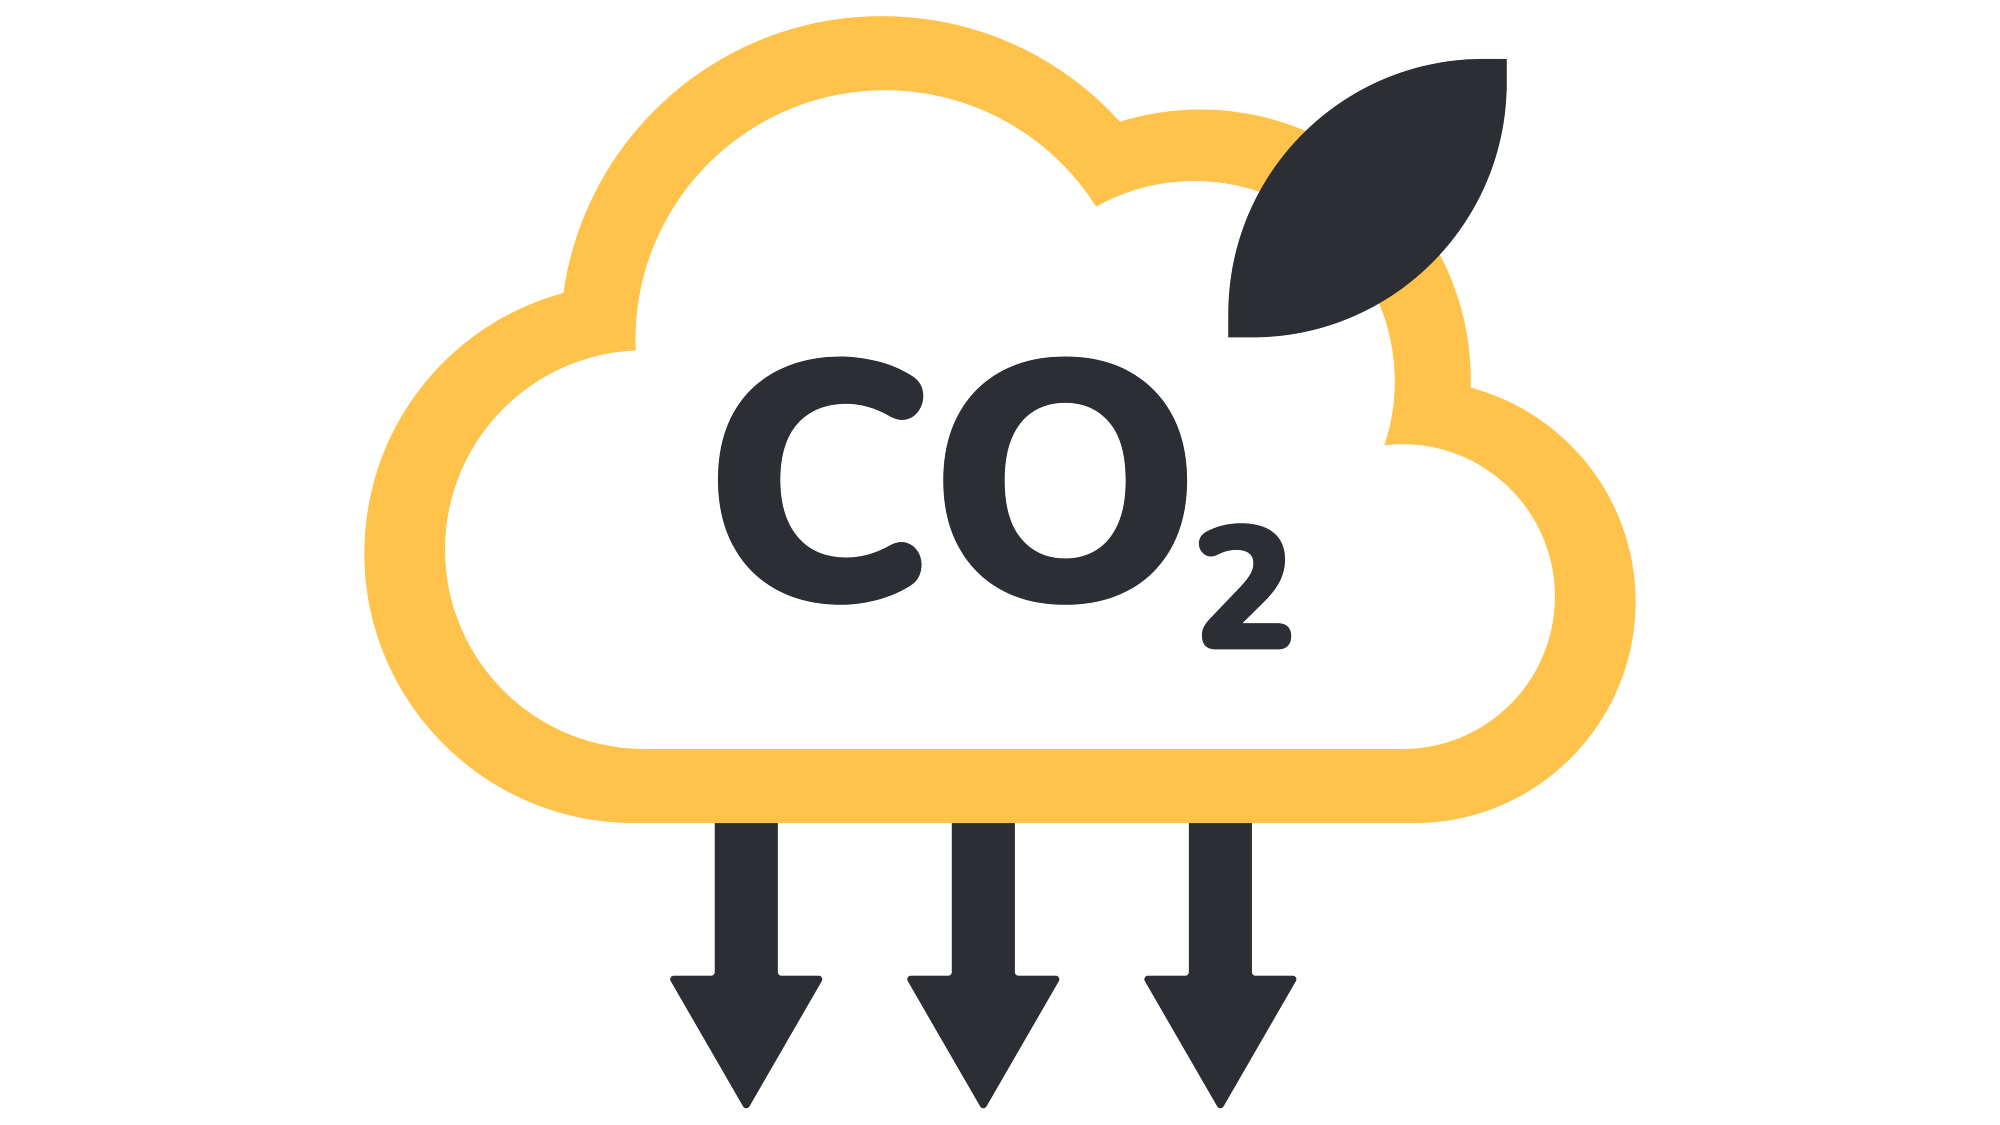 CO2 Kg Emissions Saved